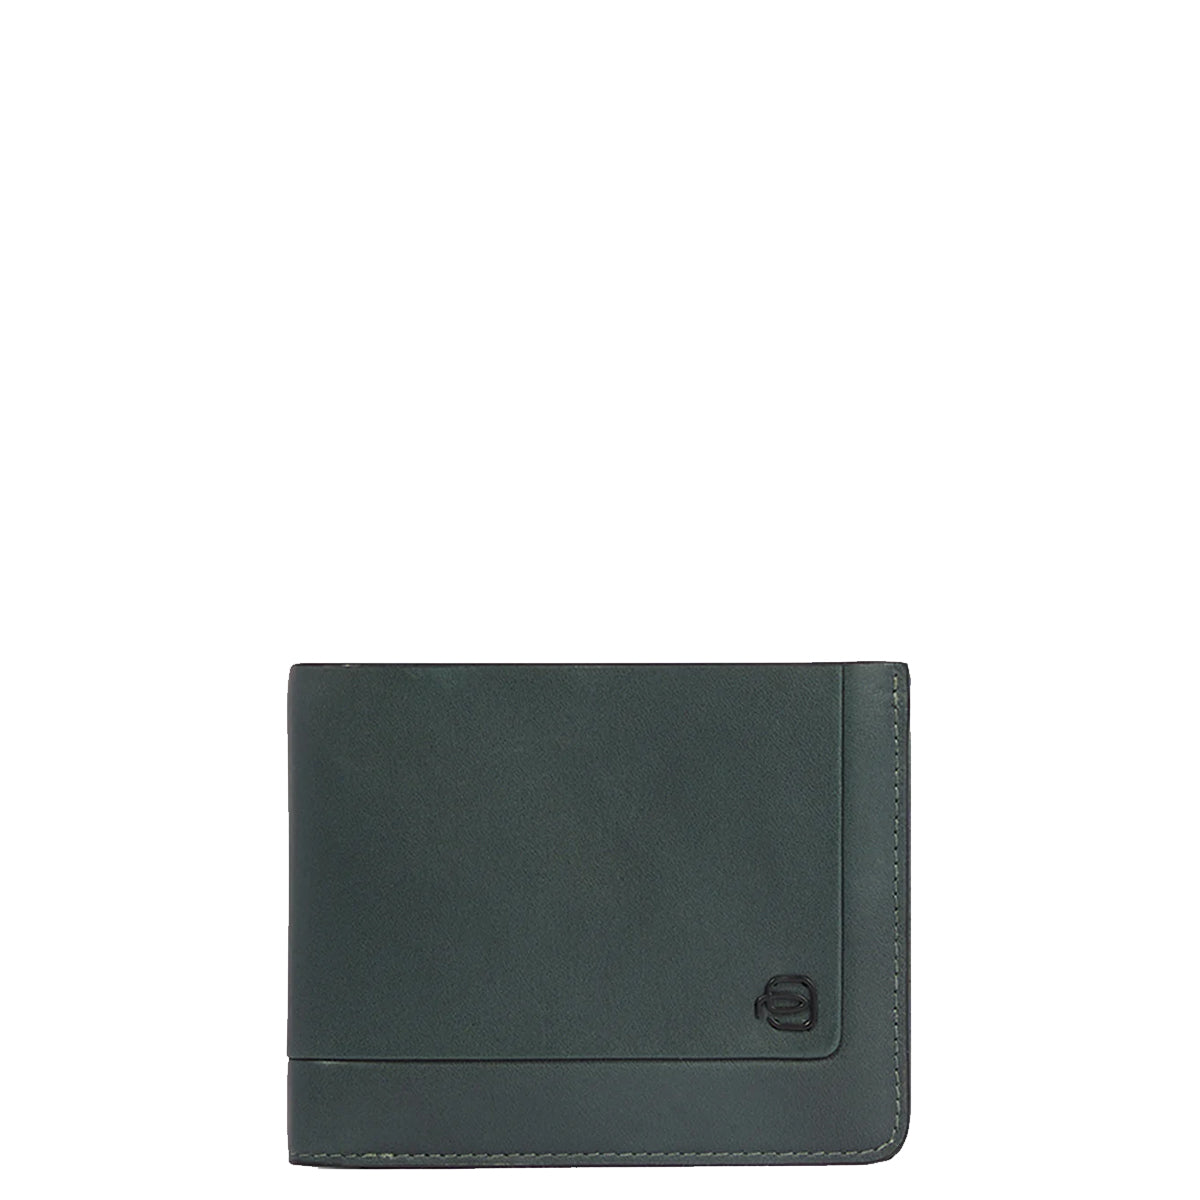 Piquadro - Portafoglio con portamonete con zip RFID David - PU4823S130R - VERDE